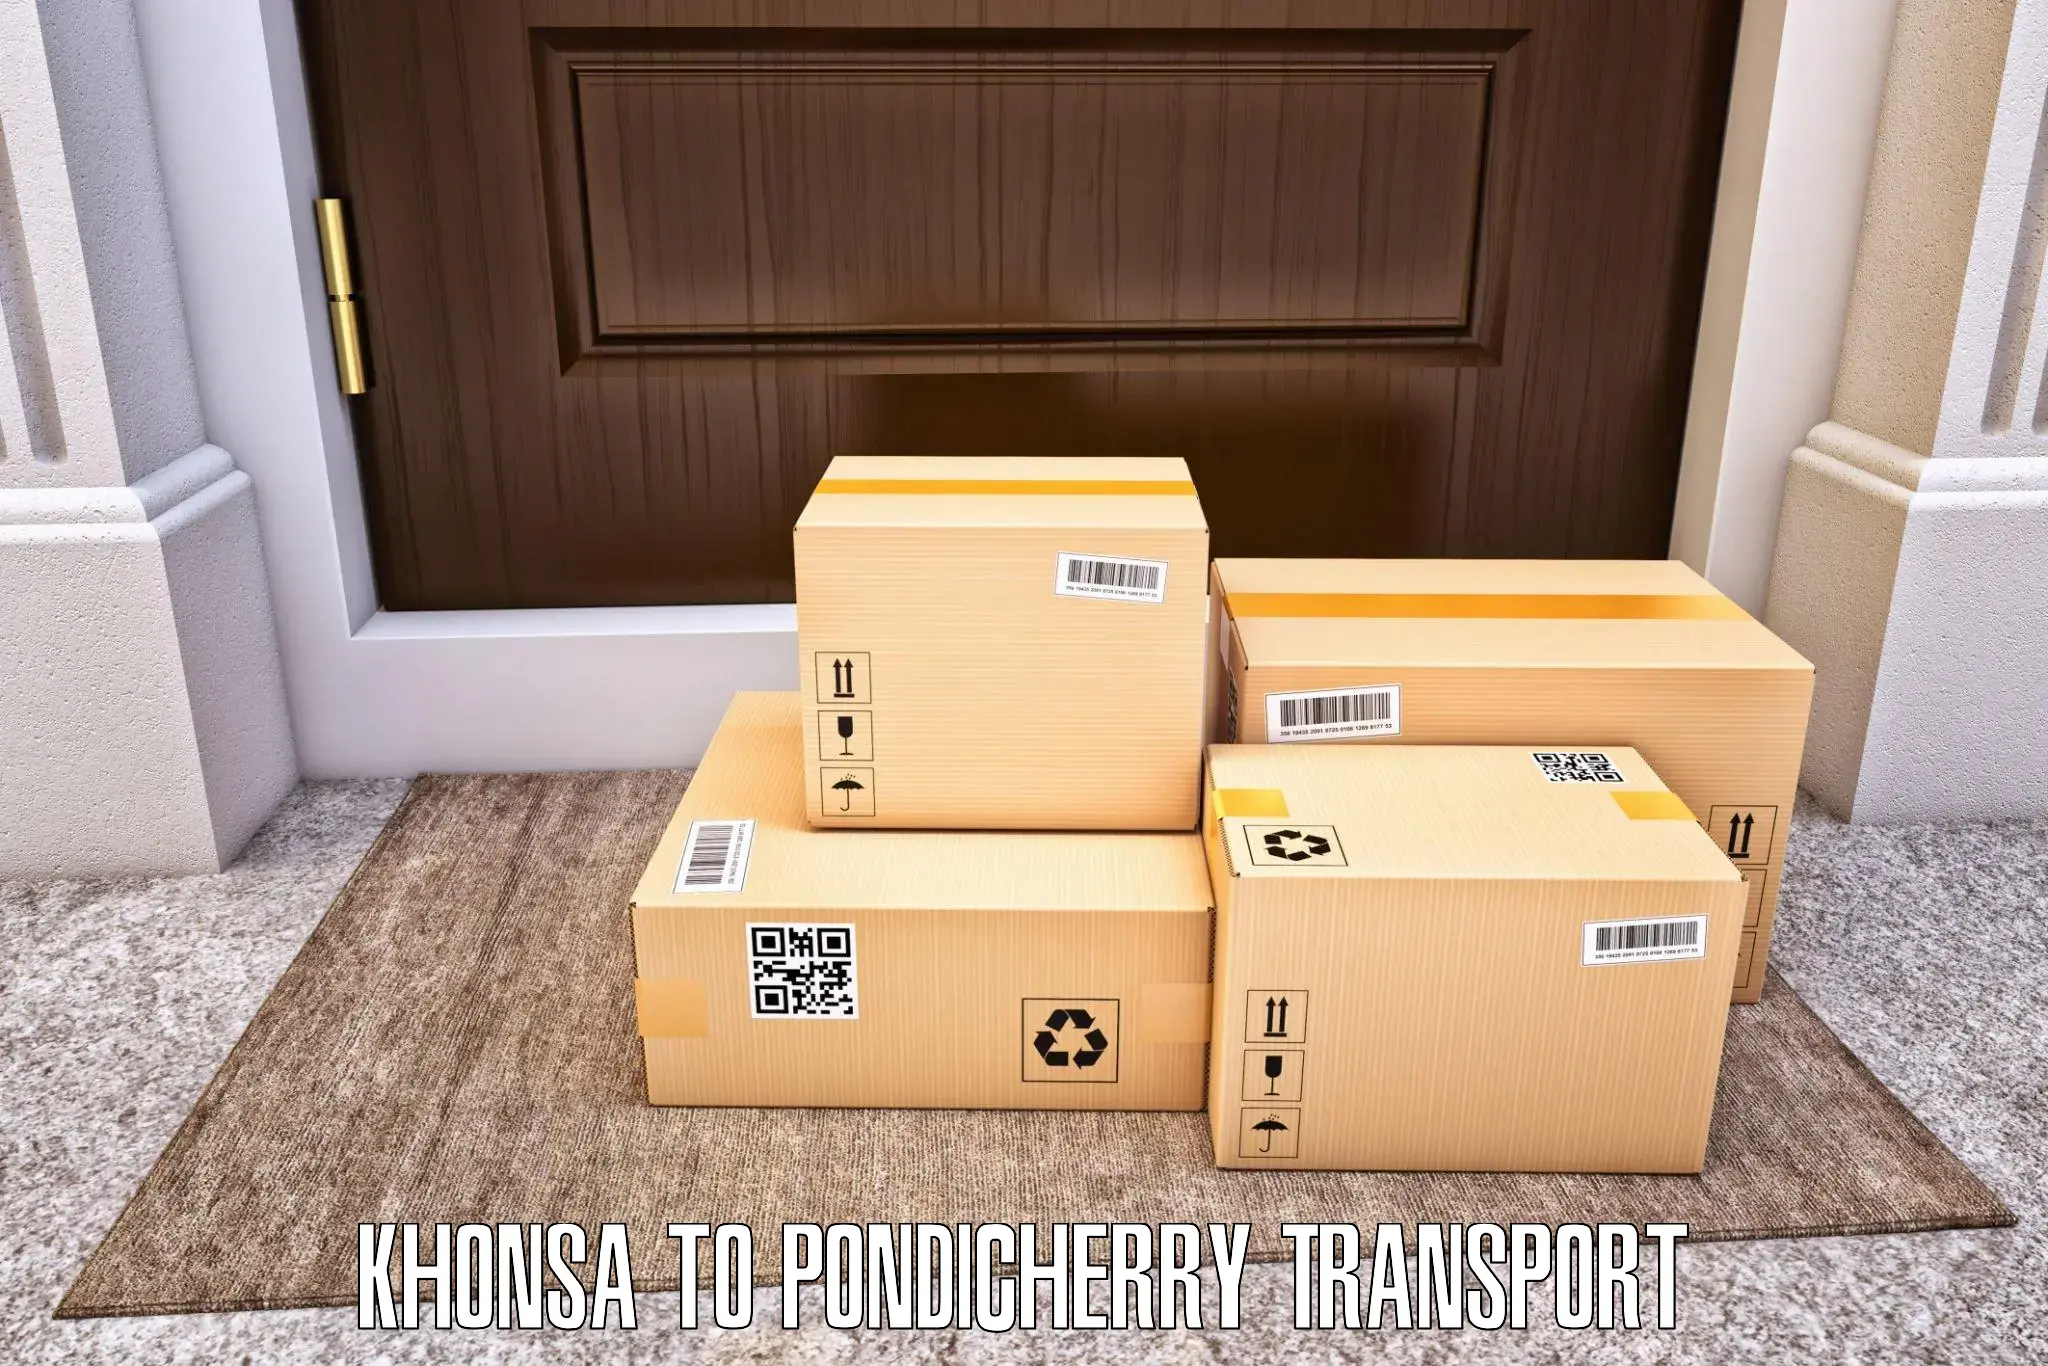 Online transport Khonsa to Pondicherry